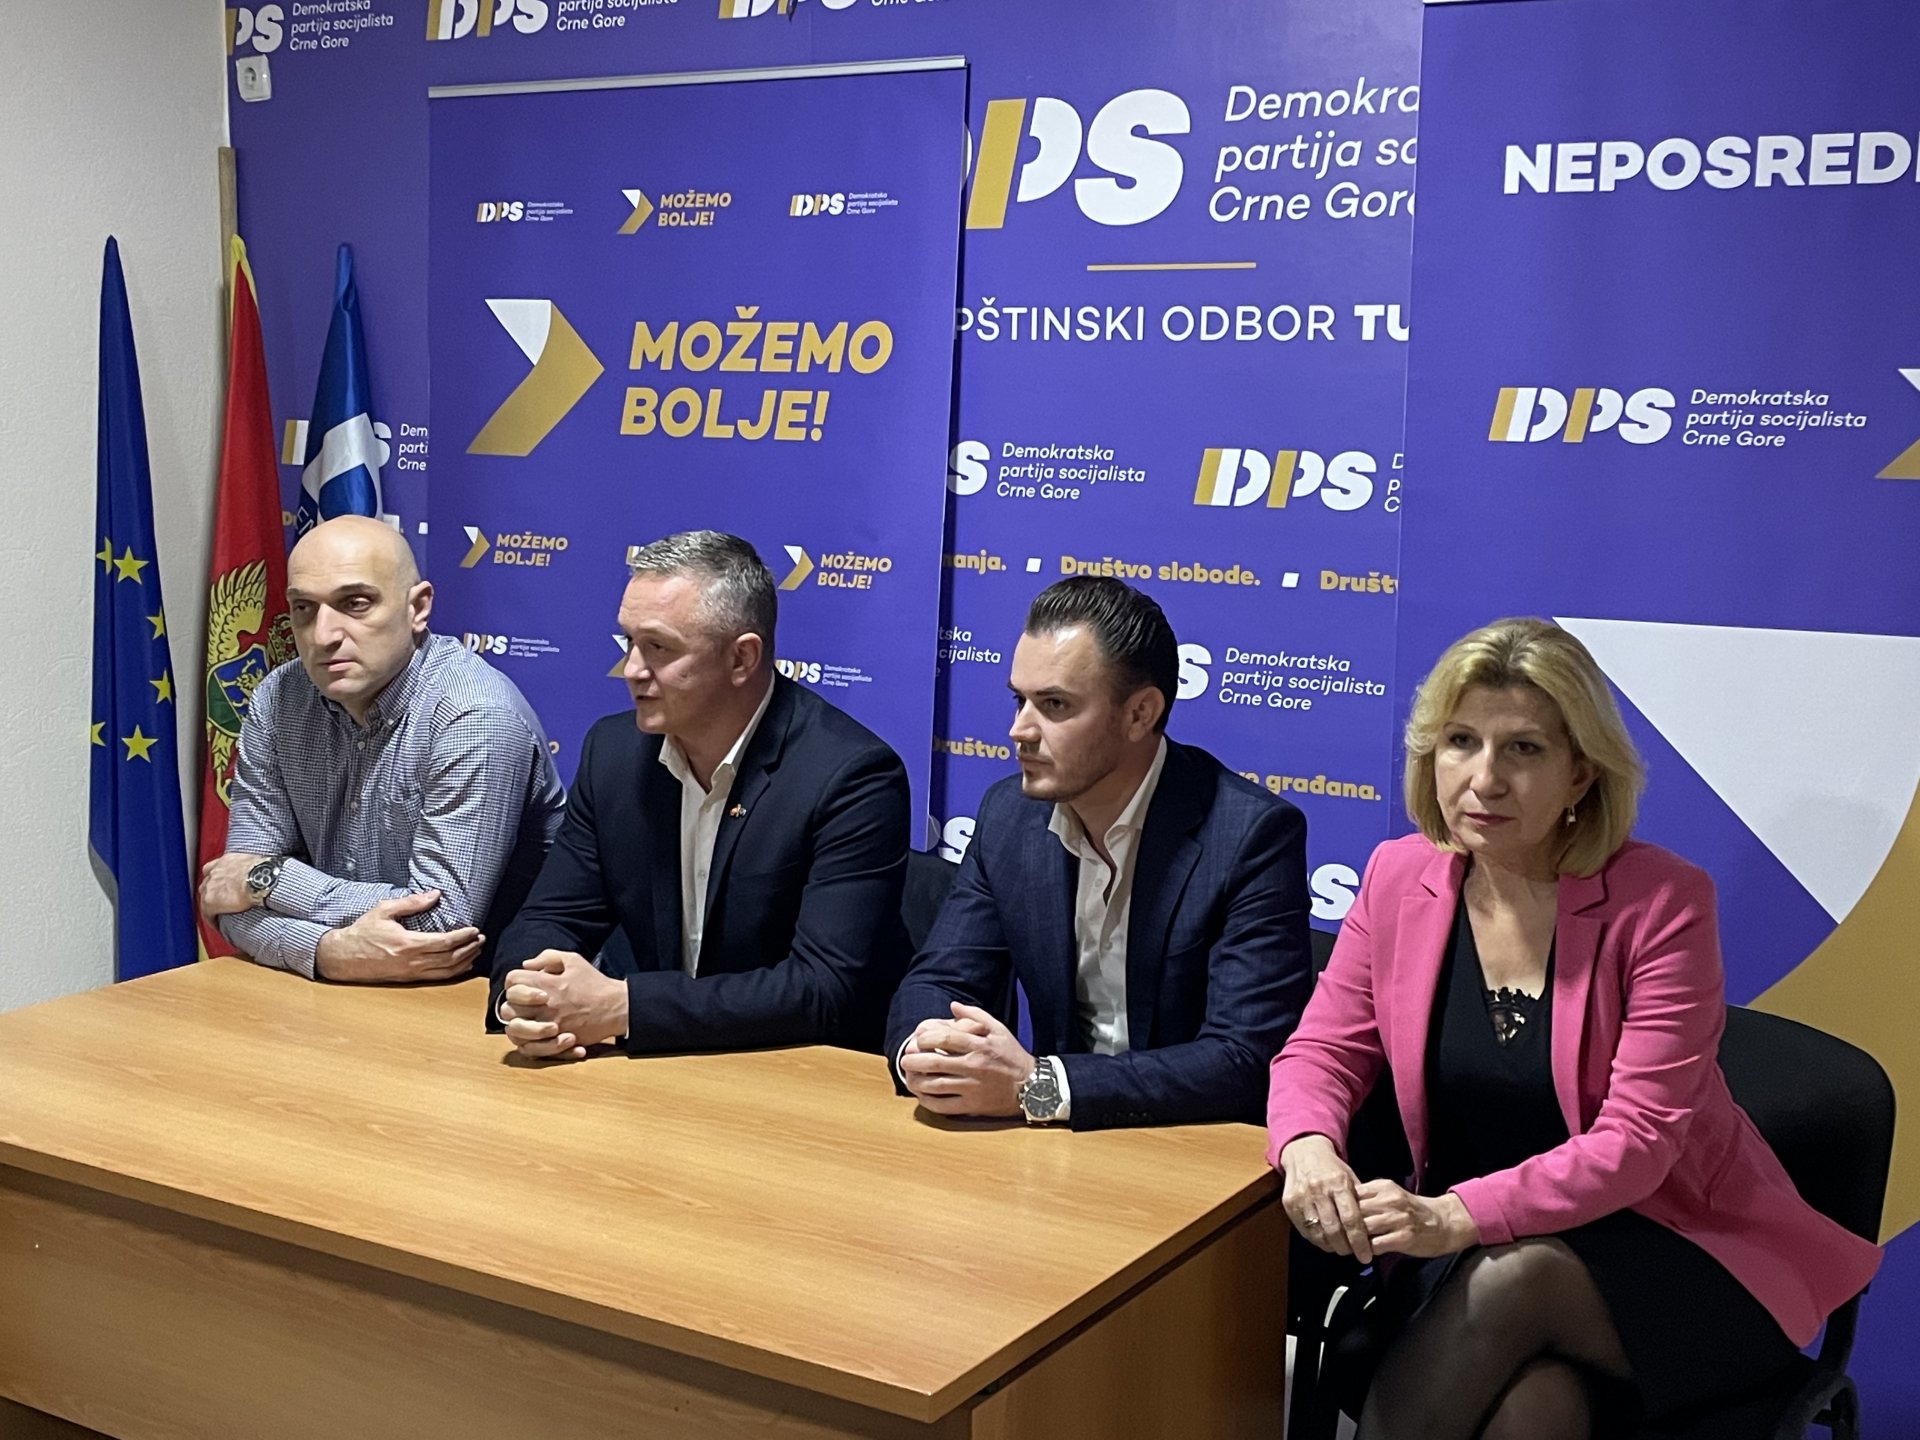 DPS u Tuzima: Nastavljamo sa reformama unutar partije, timski rad biće garant uspjeha DPS-a u narednom periodu